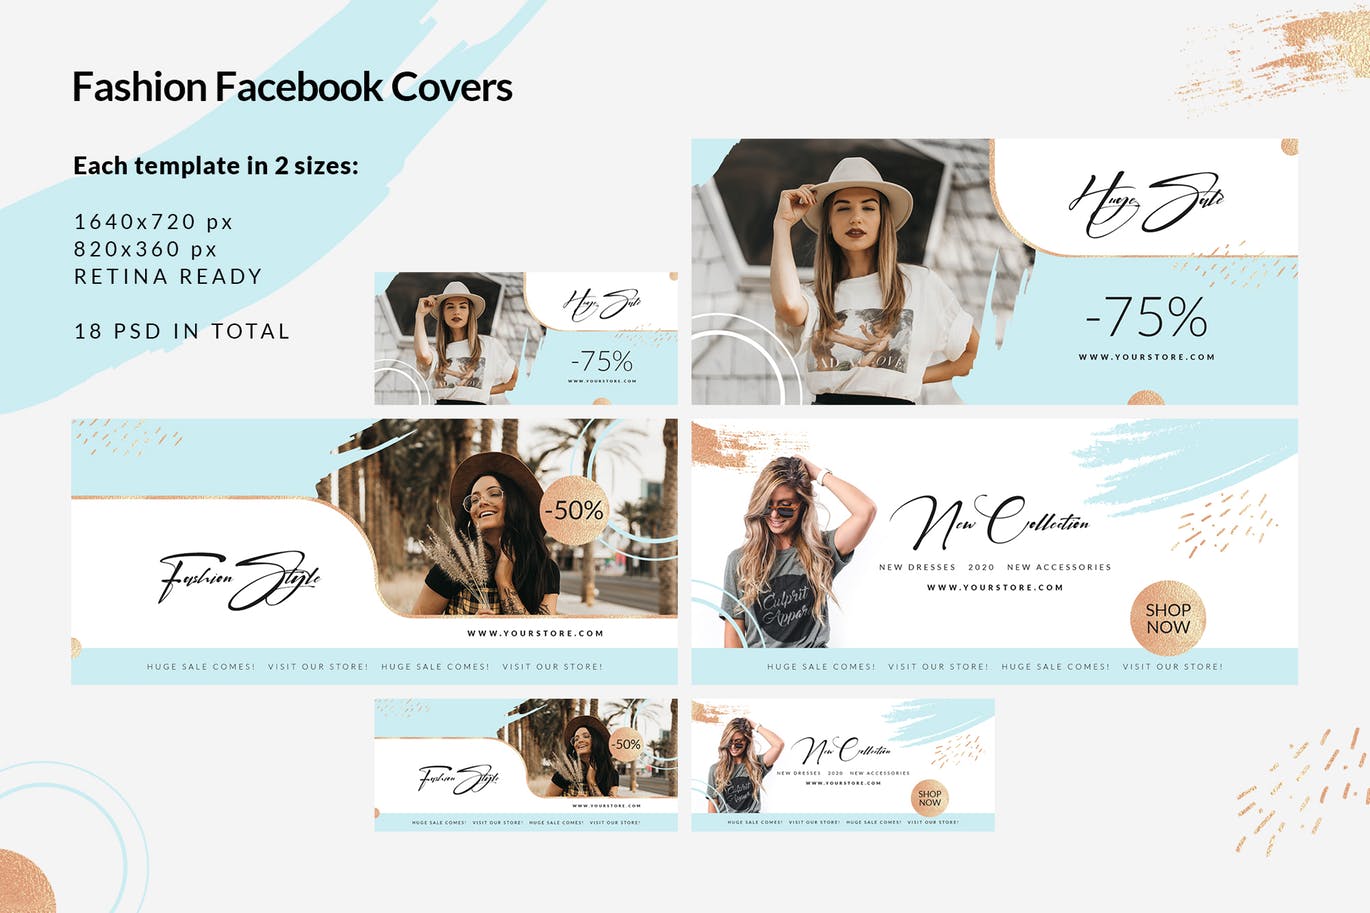 时尚品牌打折促销Facebook封面设计模板非凡图库精选 Fashion Facebook Covers插图(1)